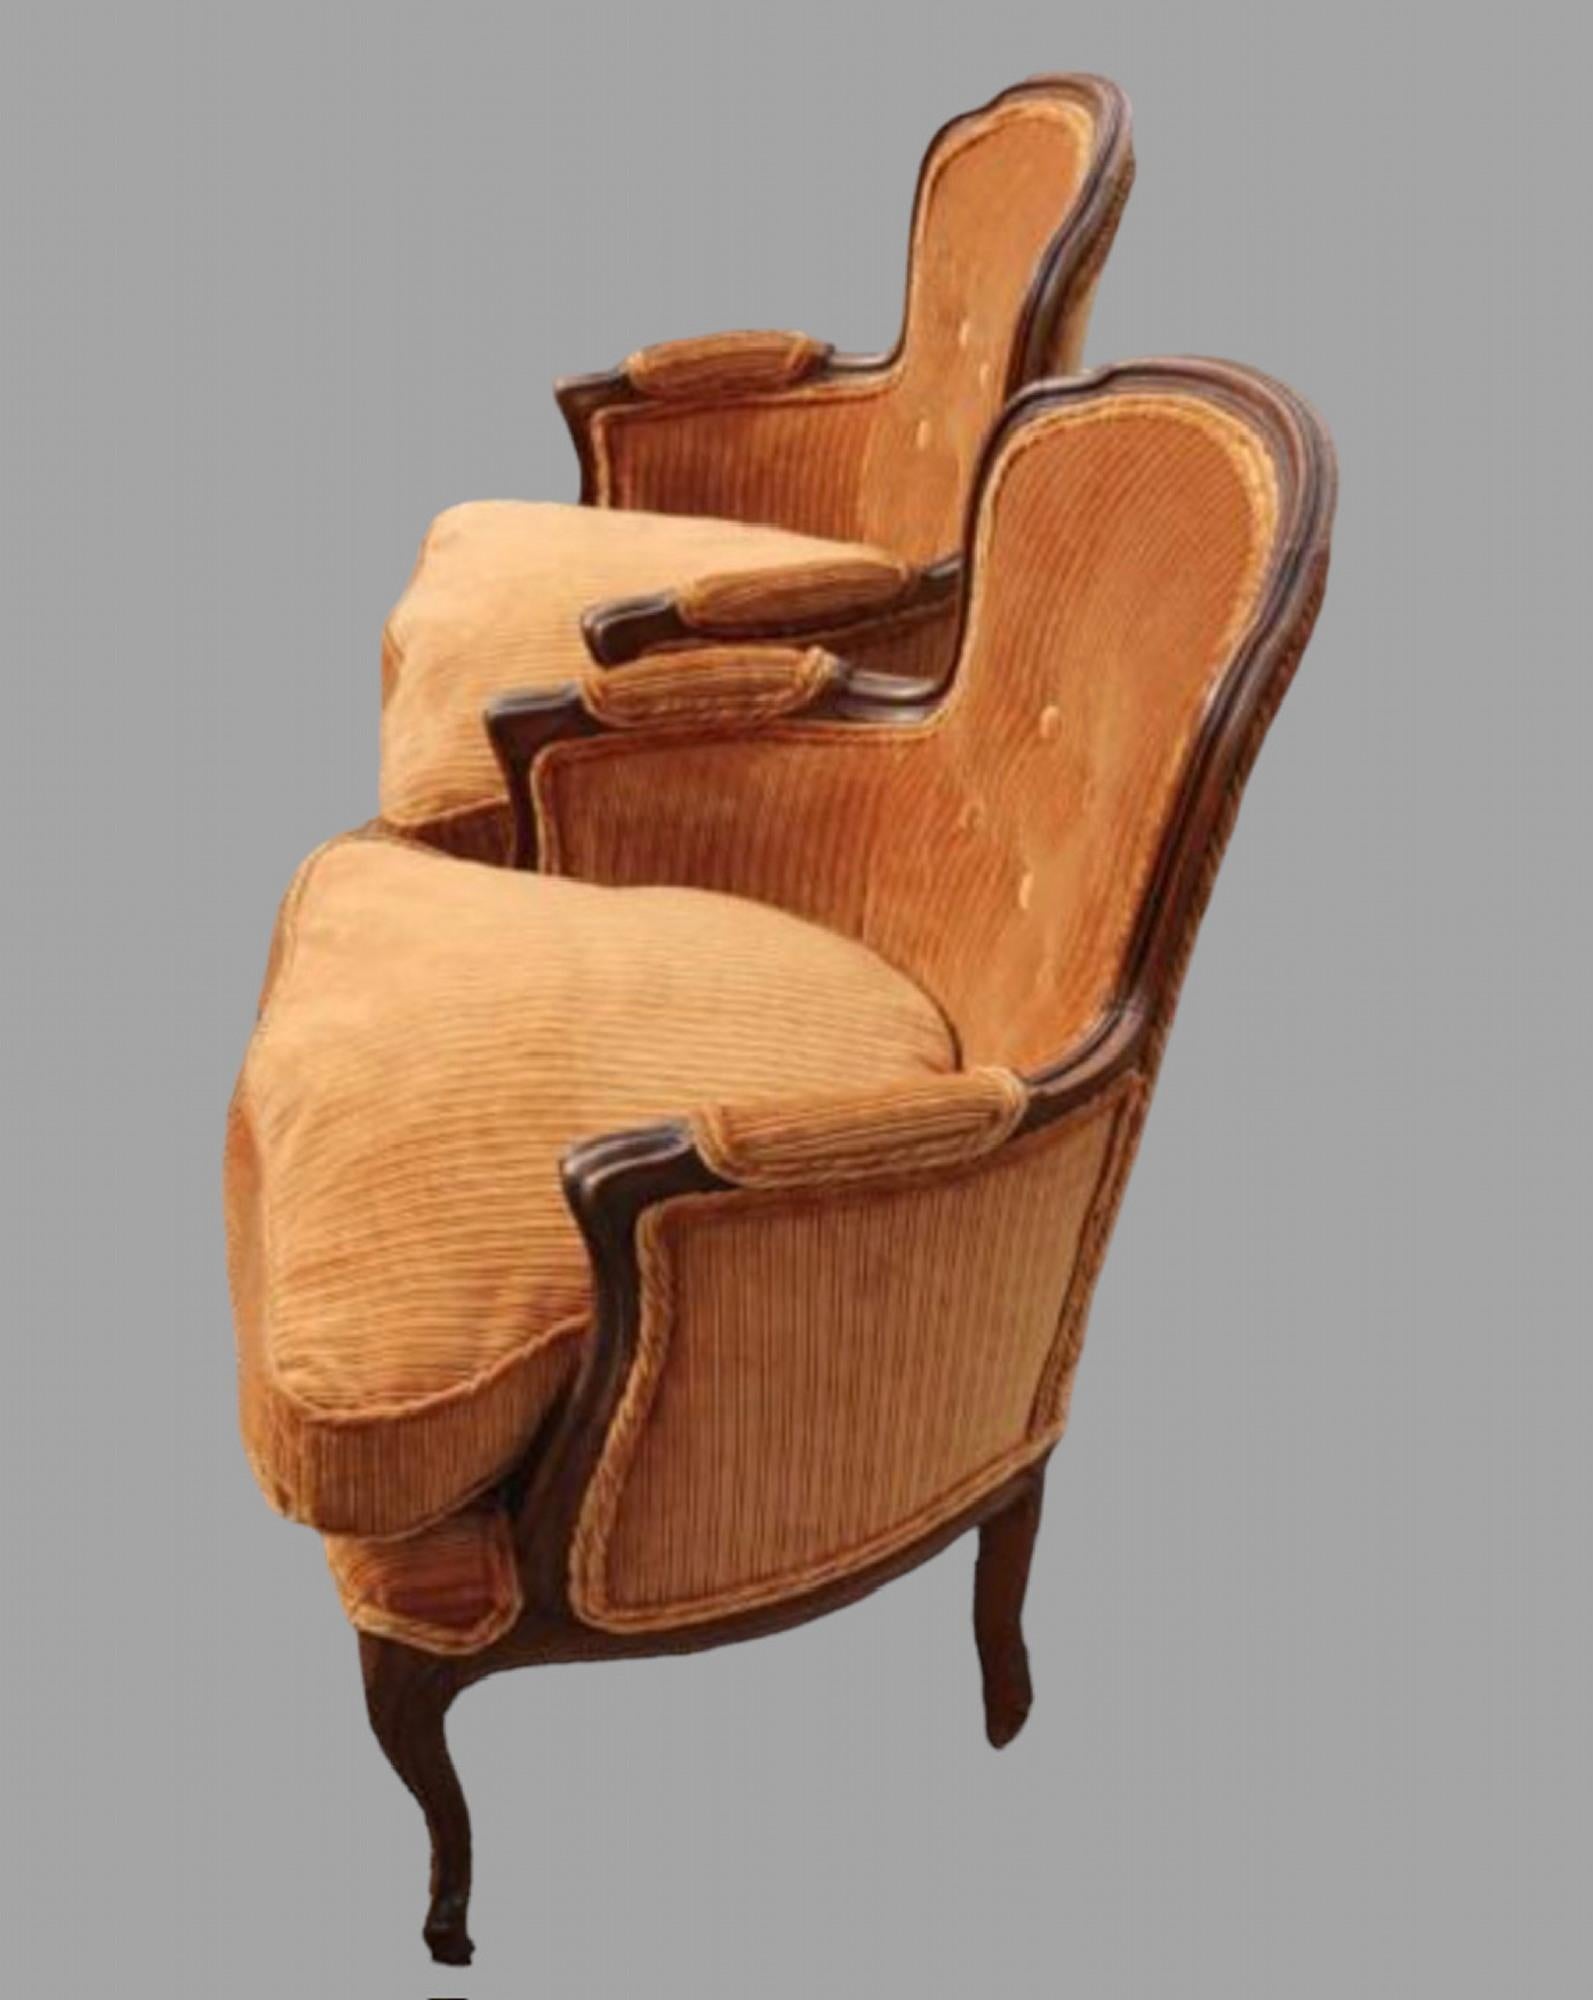 Paire de petits fauteuils à cadre en noyer français, recouverts d'un beau velours de coton couleur rouille et d'un double passepoil.  c. 1910s / 1920s. Hauteur du siège 44 cm